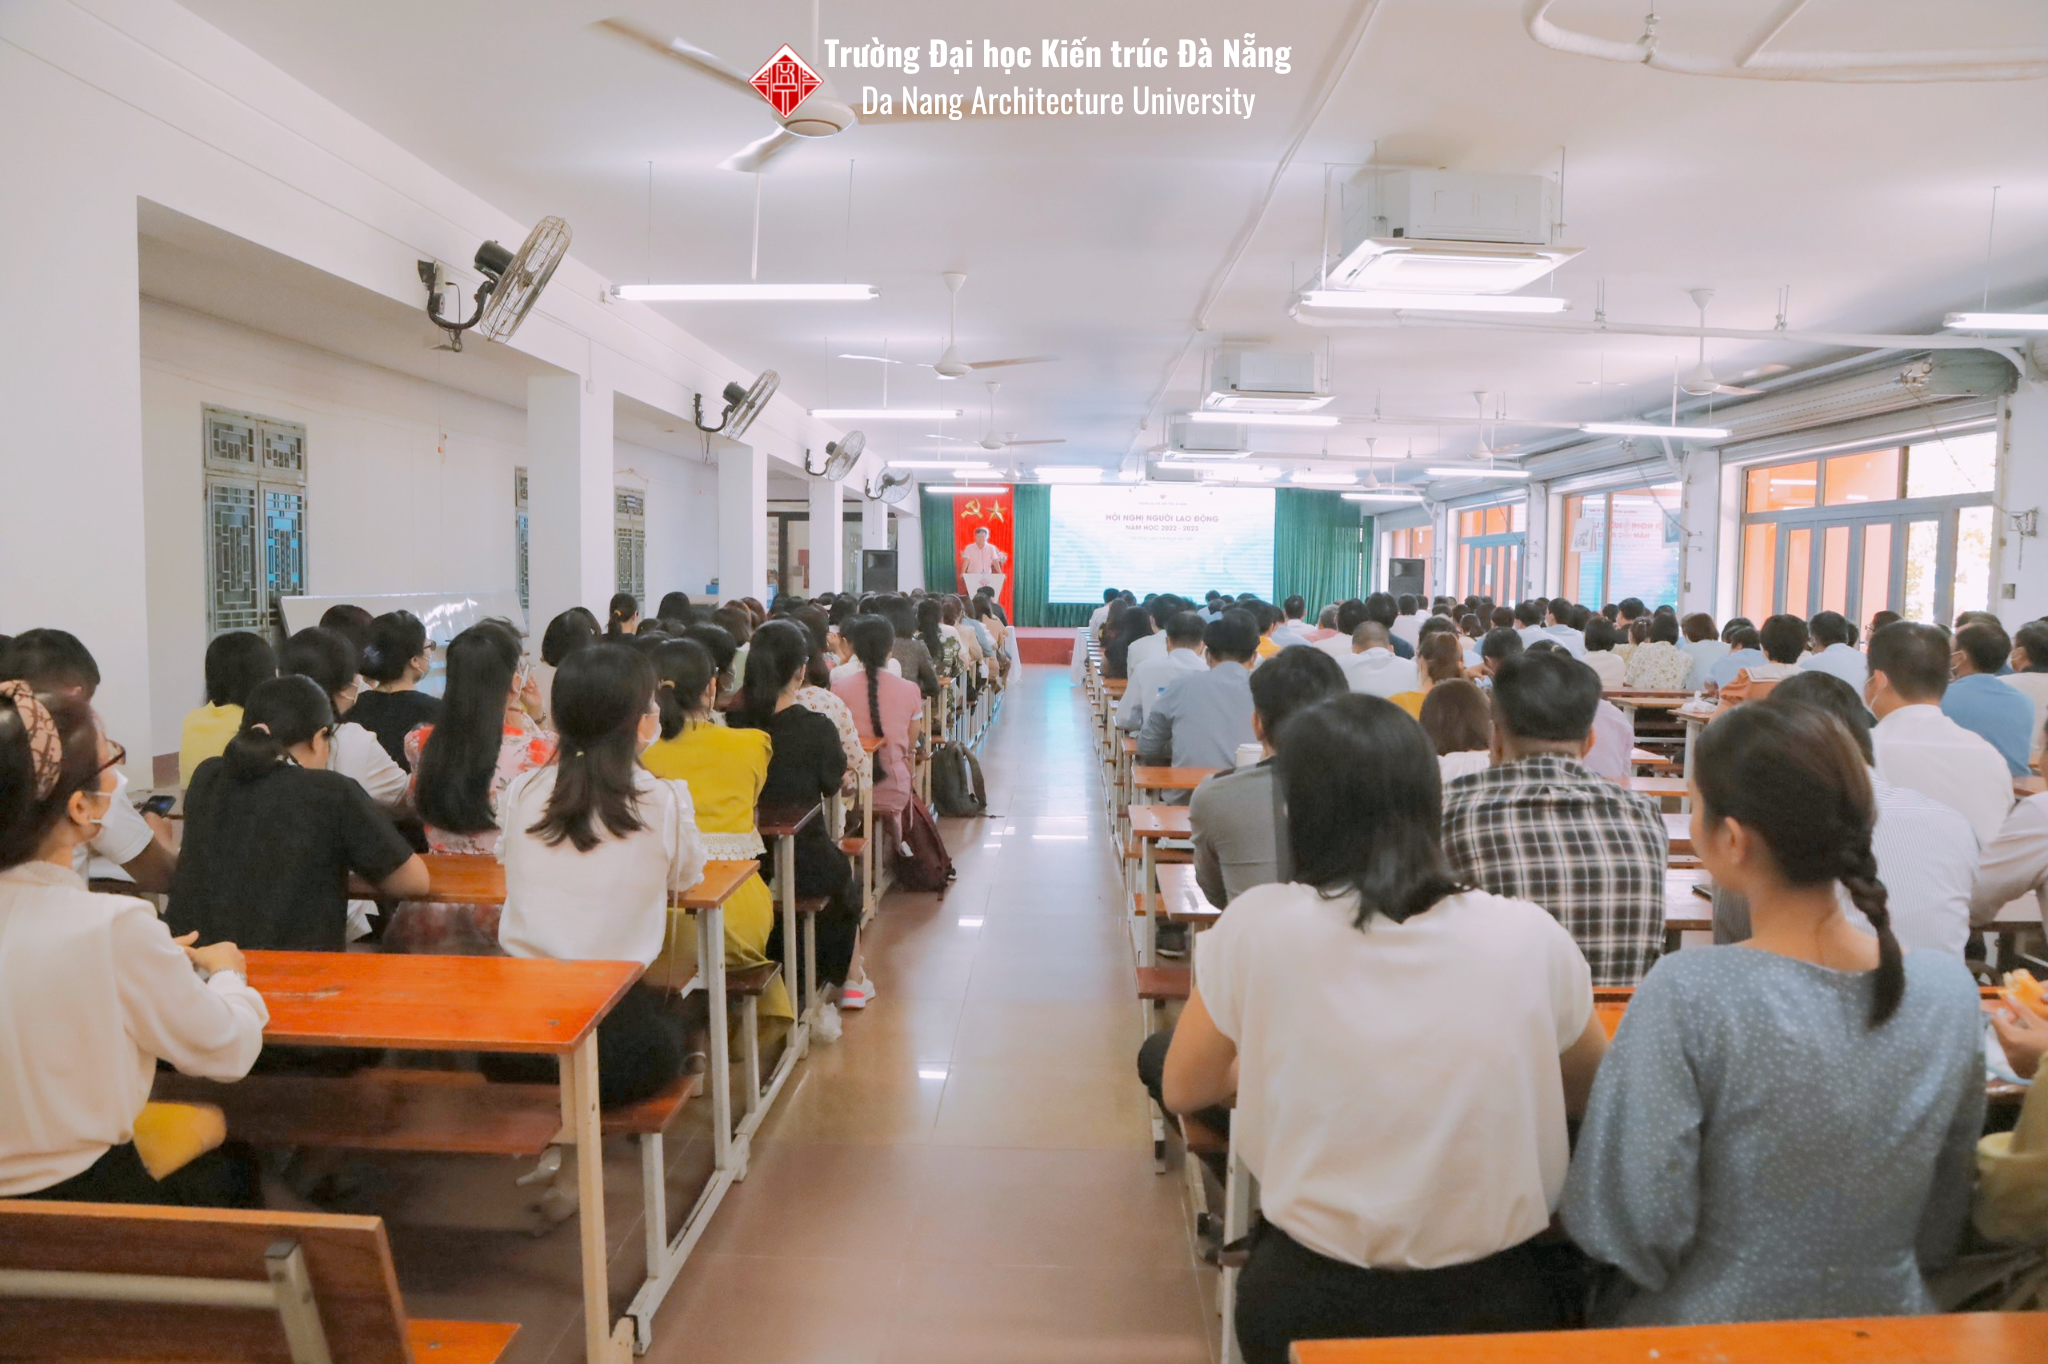 Trường Đại học Kiến trúc Đà Nẵng (DAU) tổ chức Lễ tổng kết năm học 2021-2022; Hội nghị người lao động và sinh hoạt chính trị đầu năm học 2022-2023